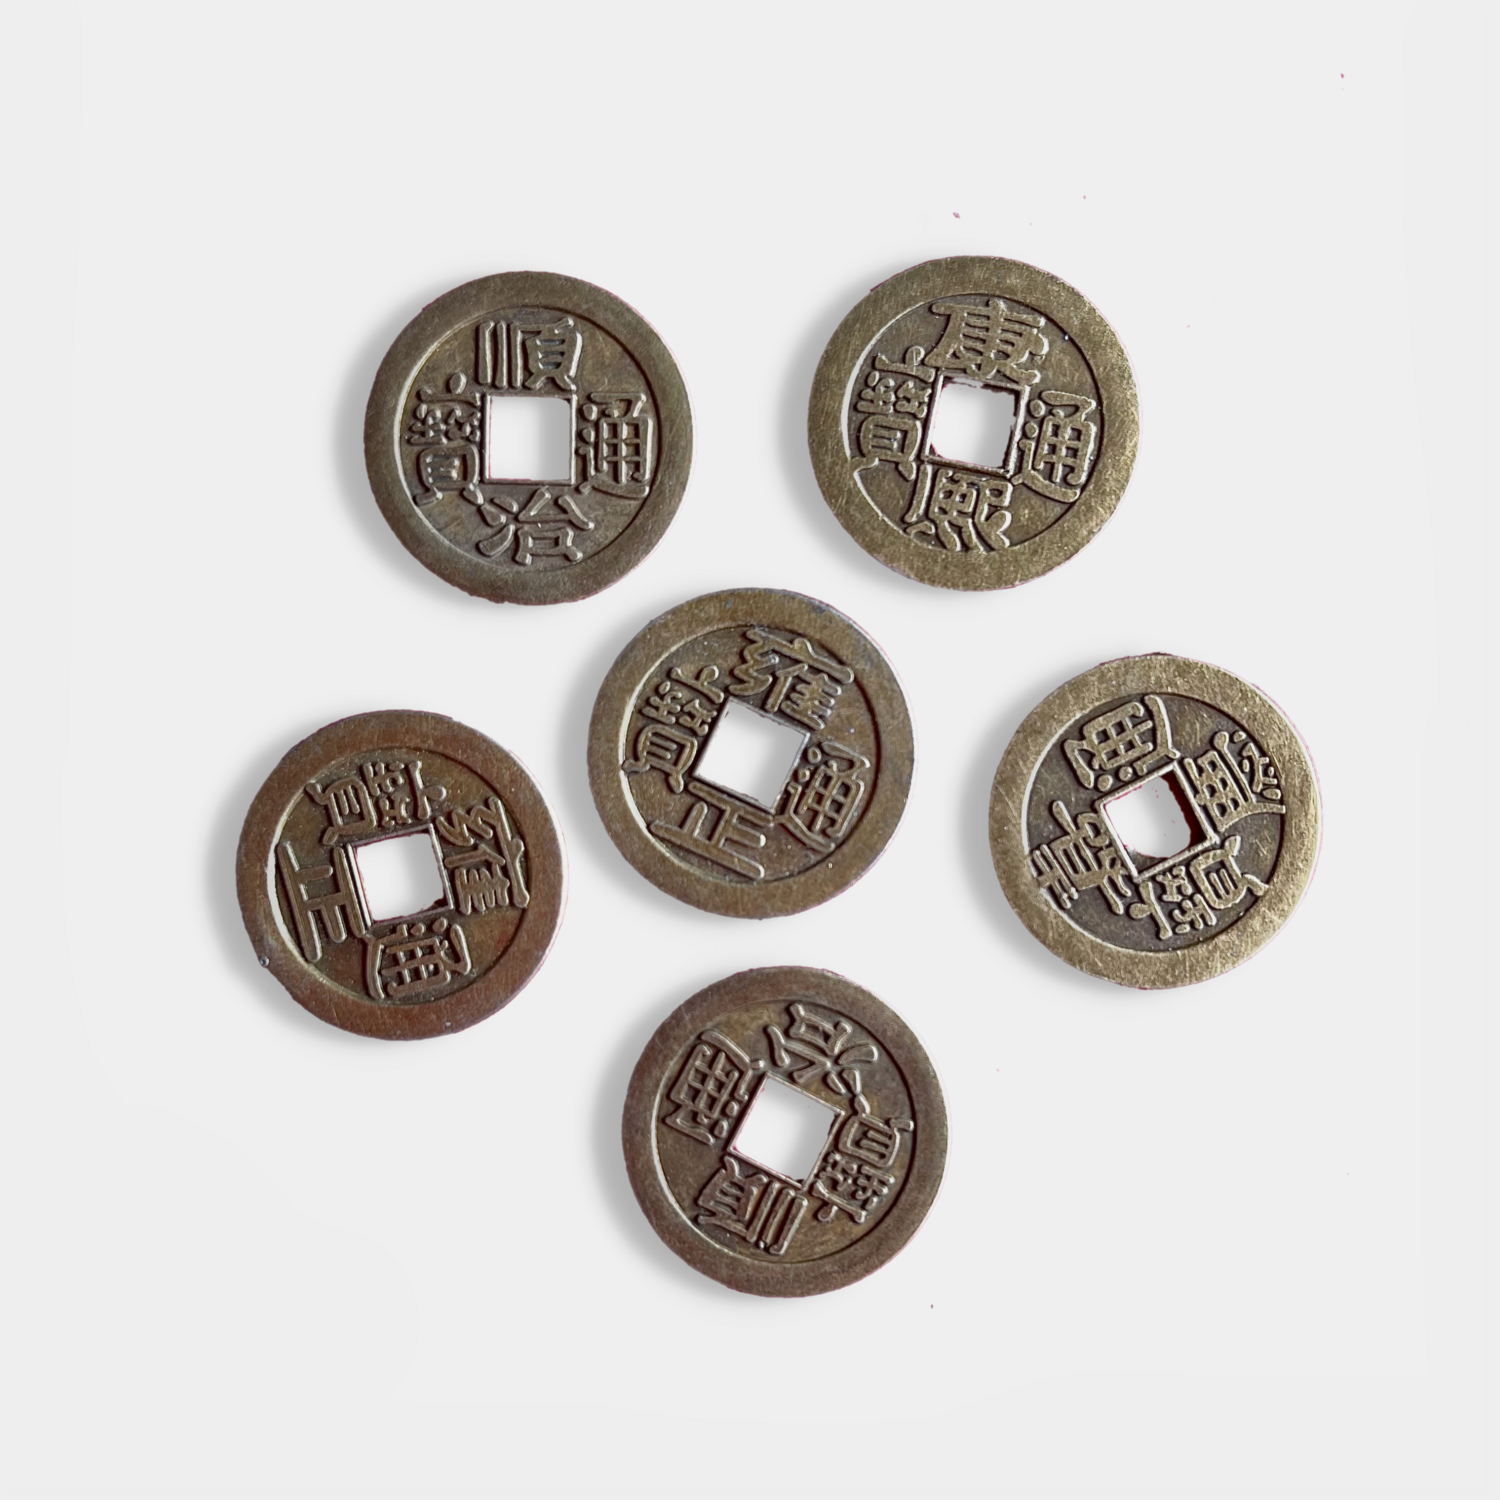 6 x iChing coins